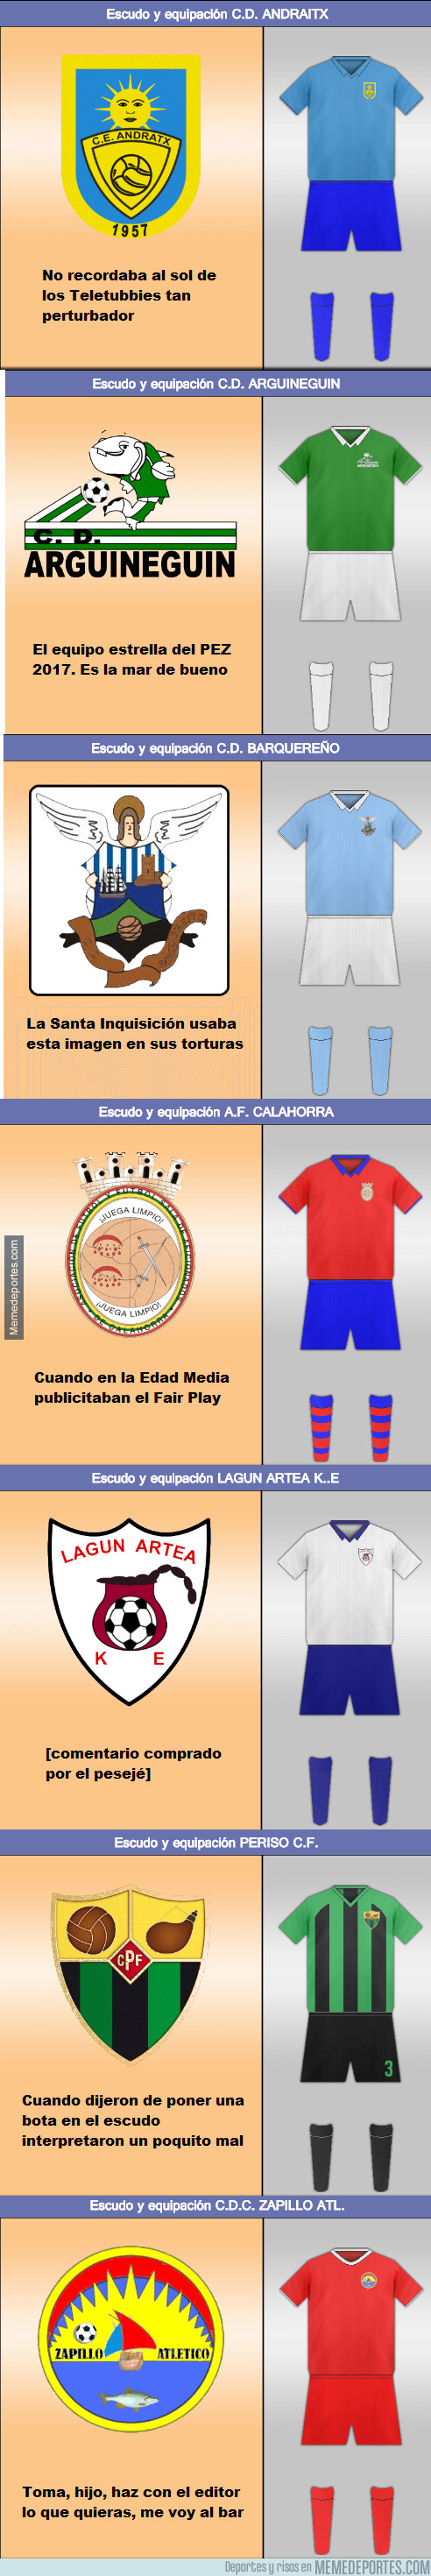 995168 - Los escudos más raros del fútbol español (Parte 2)